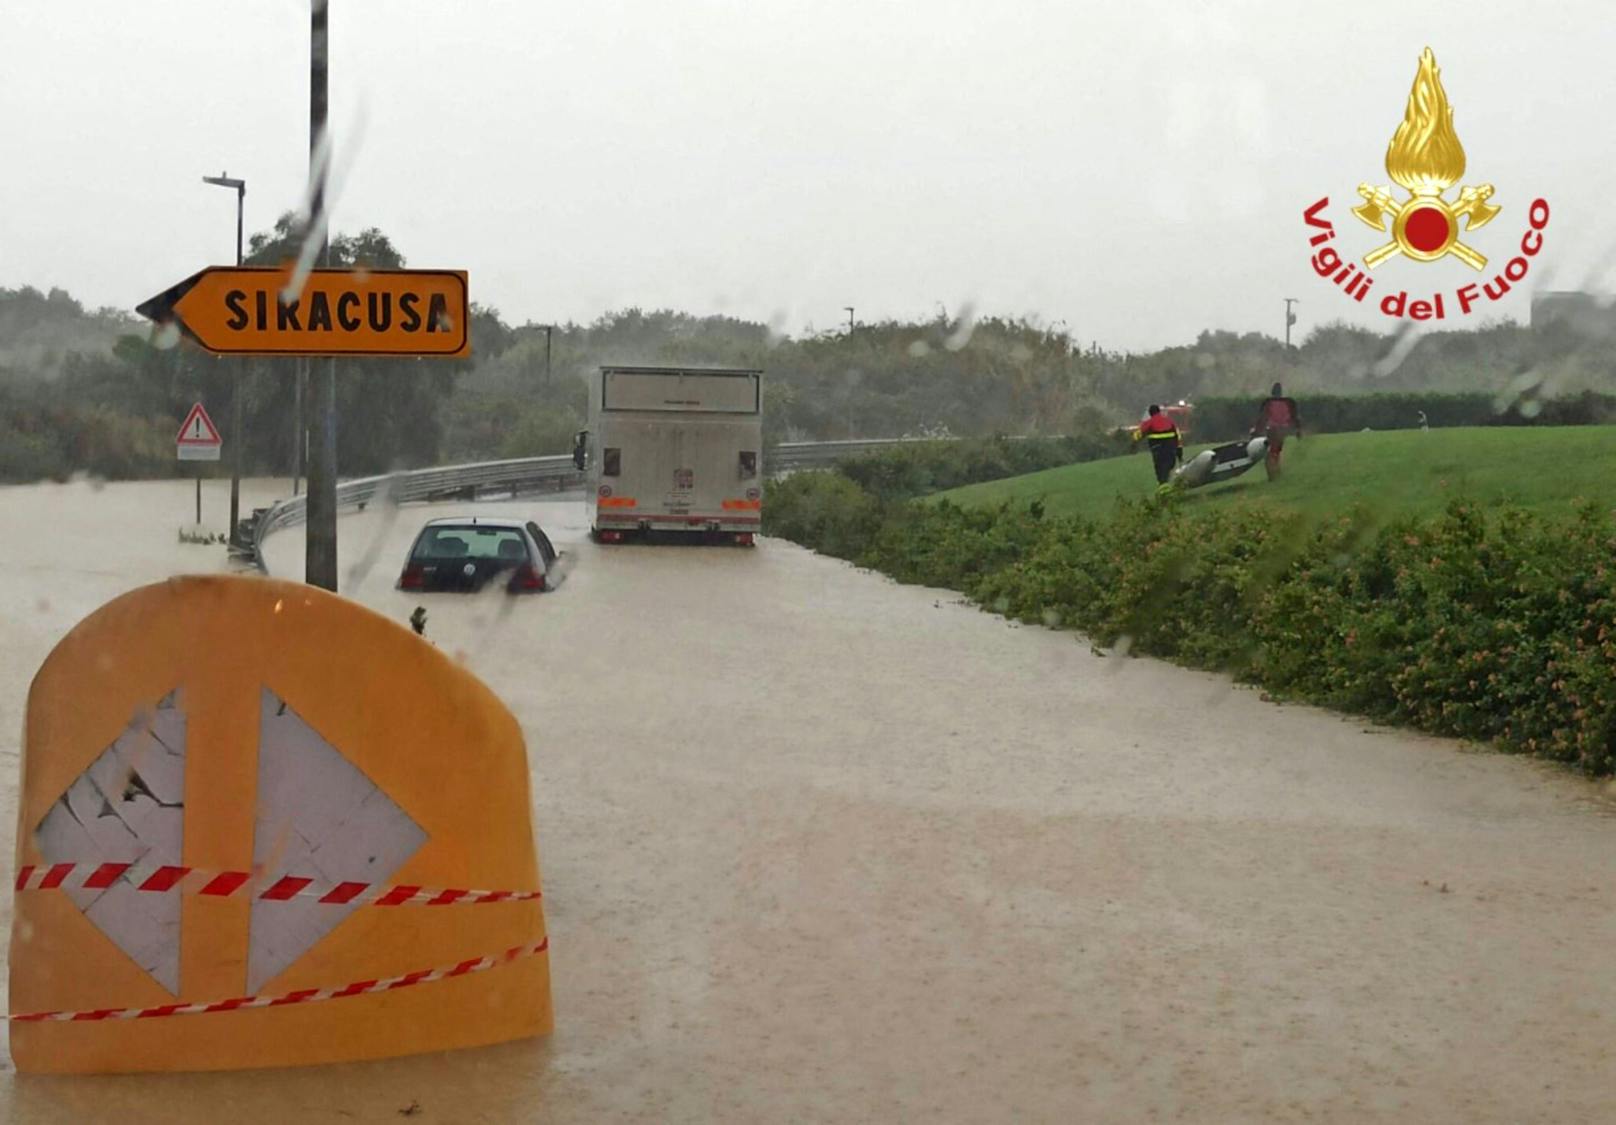 Die heftigen Unwetter führen seit Tagen zu Überschwemmungen und Schäden im Osten Siziliens